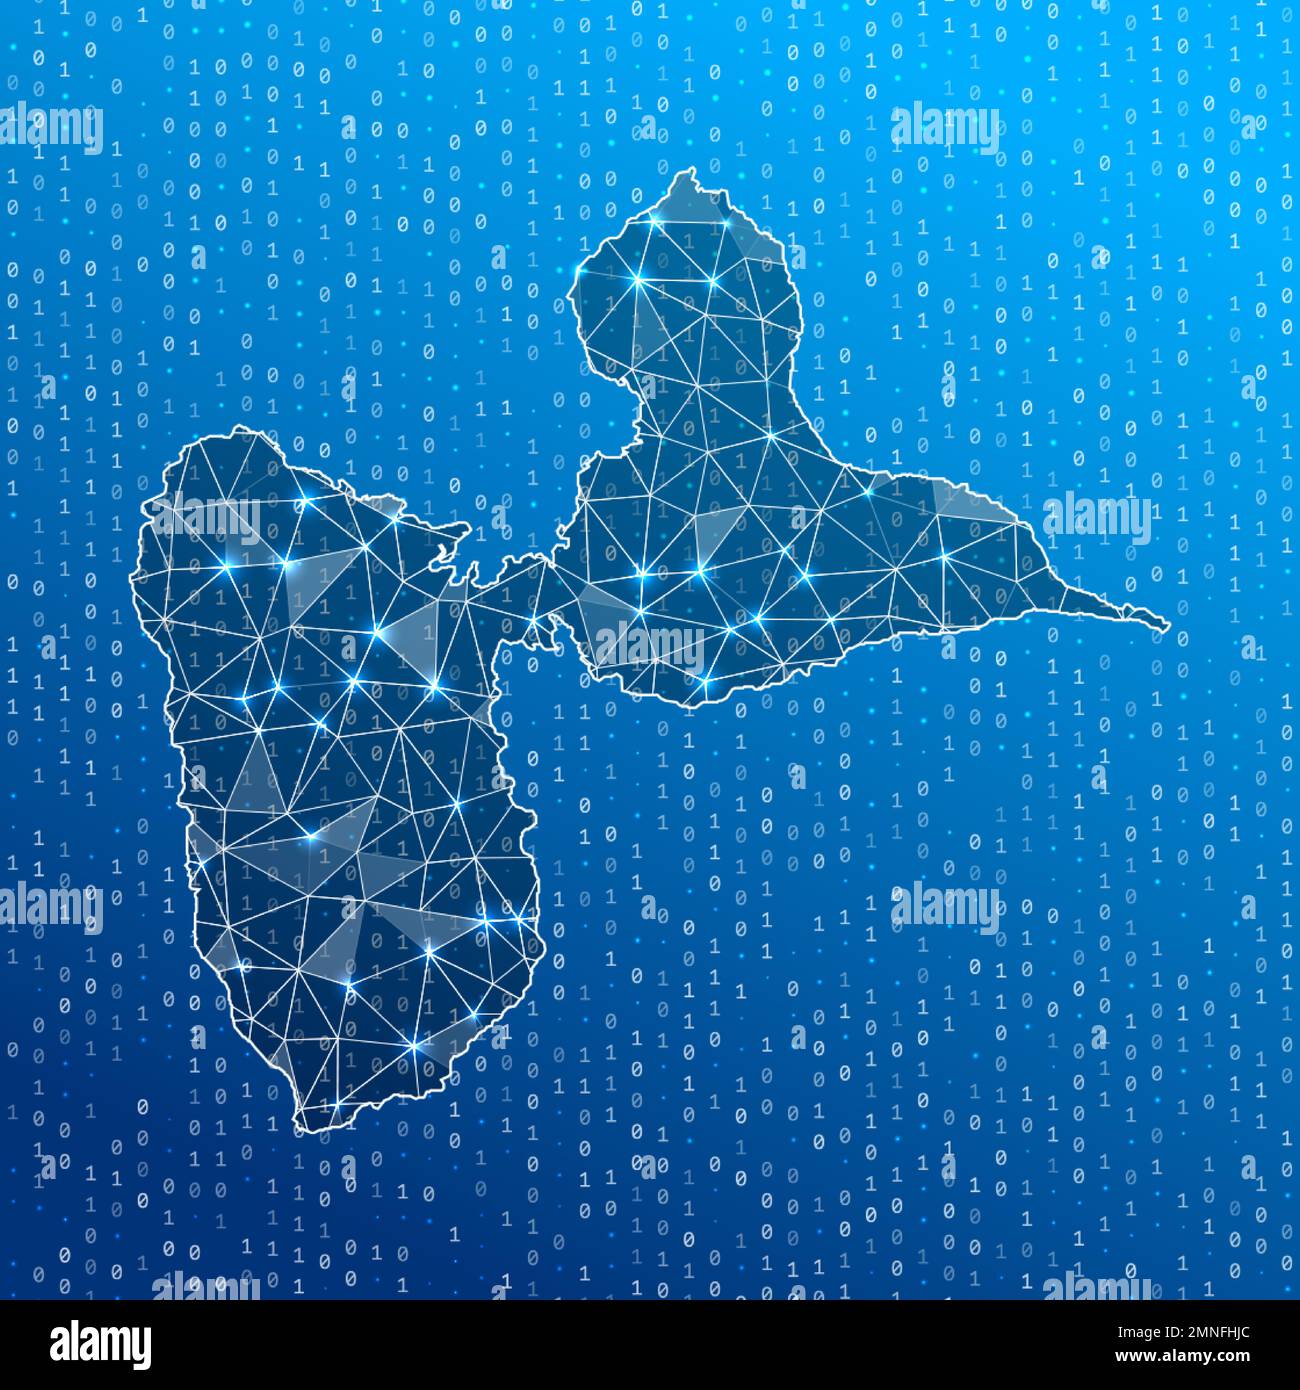 Carte réseau de l'île de Basse-Terre. Carte des connexions numériques de l'île. Technologie, Internet, réseau, concept de télécommunication. Illustration vectorielle. Illustration de Vecteur